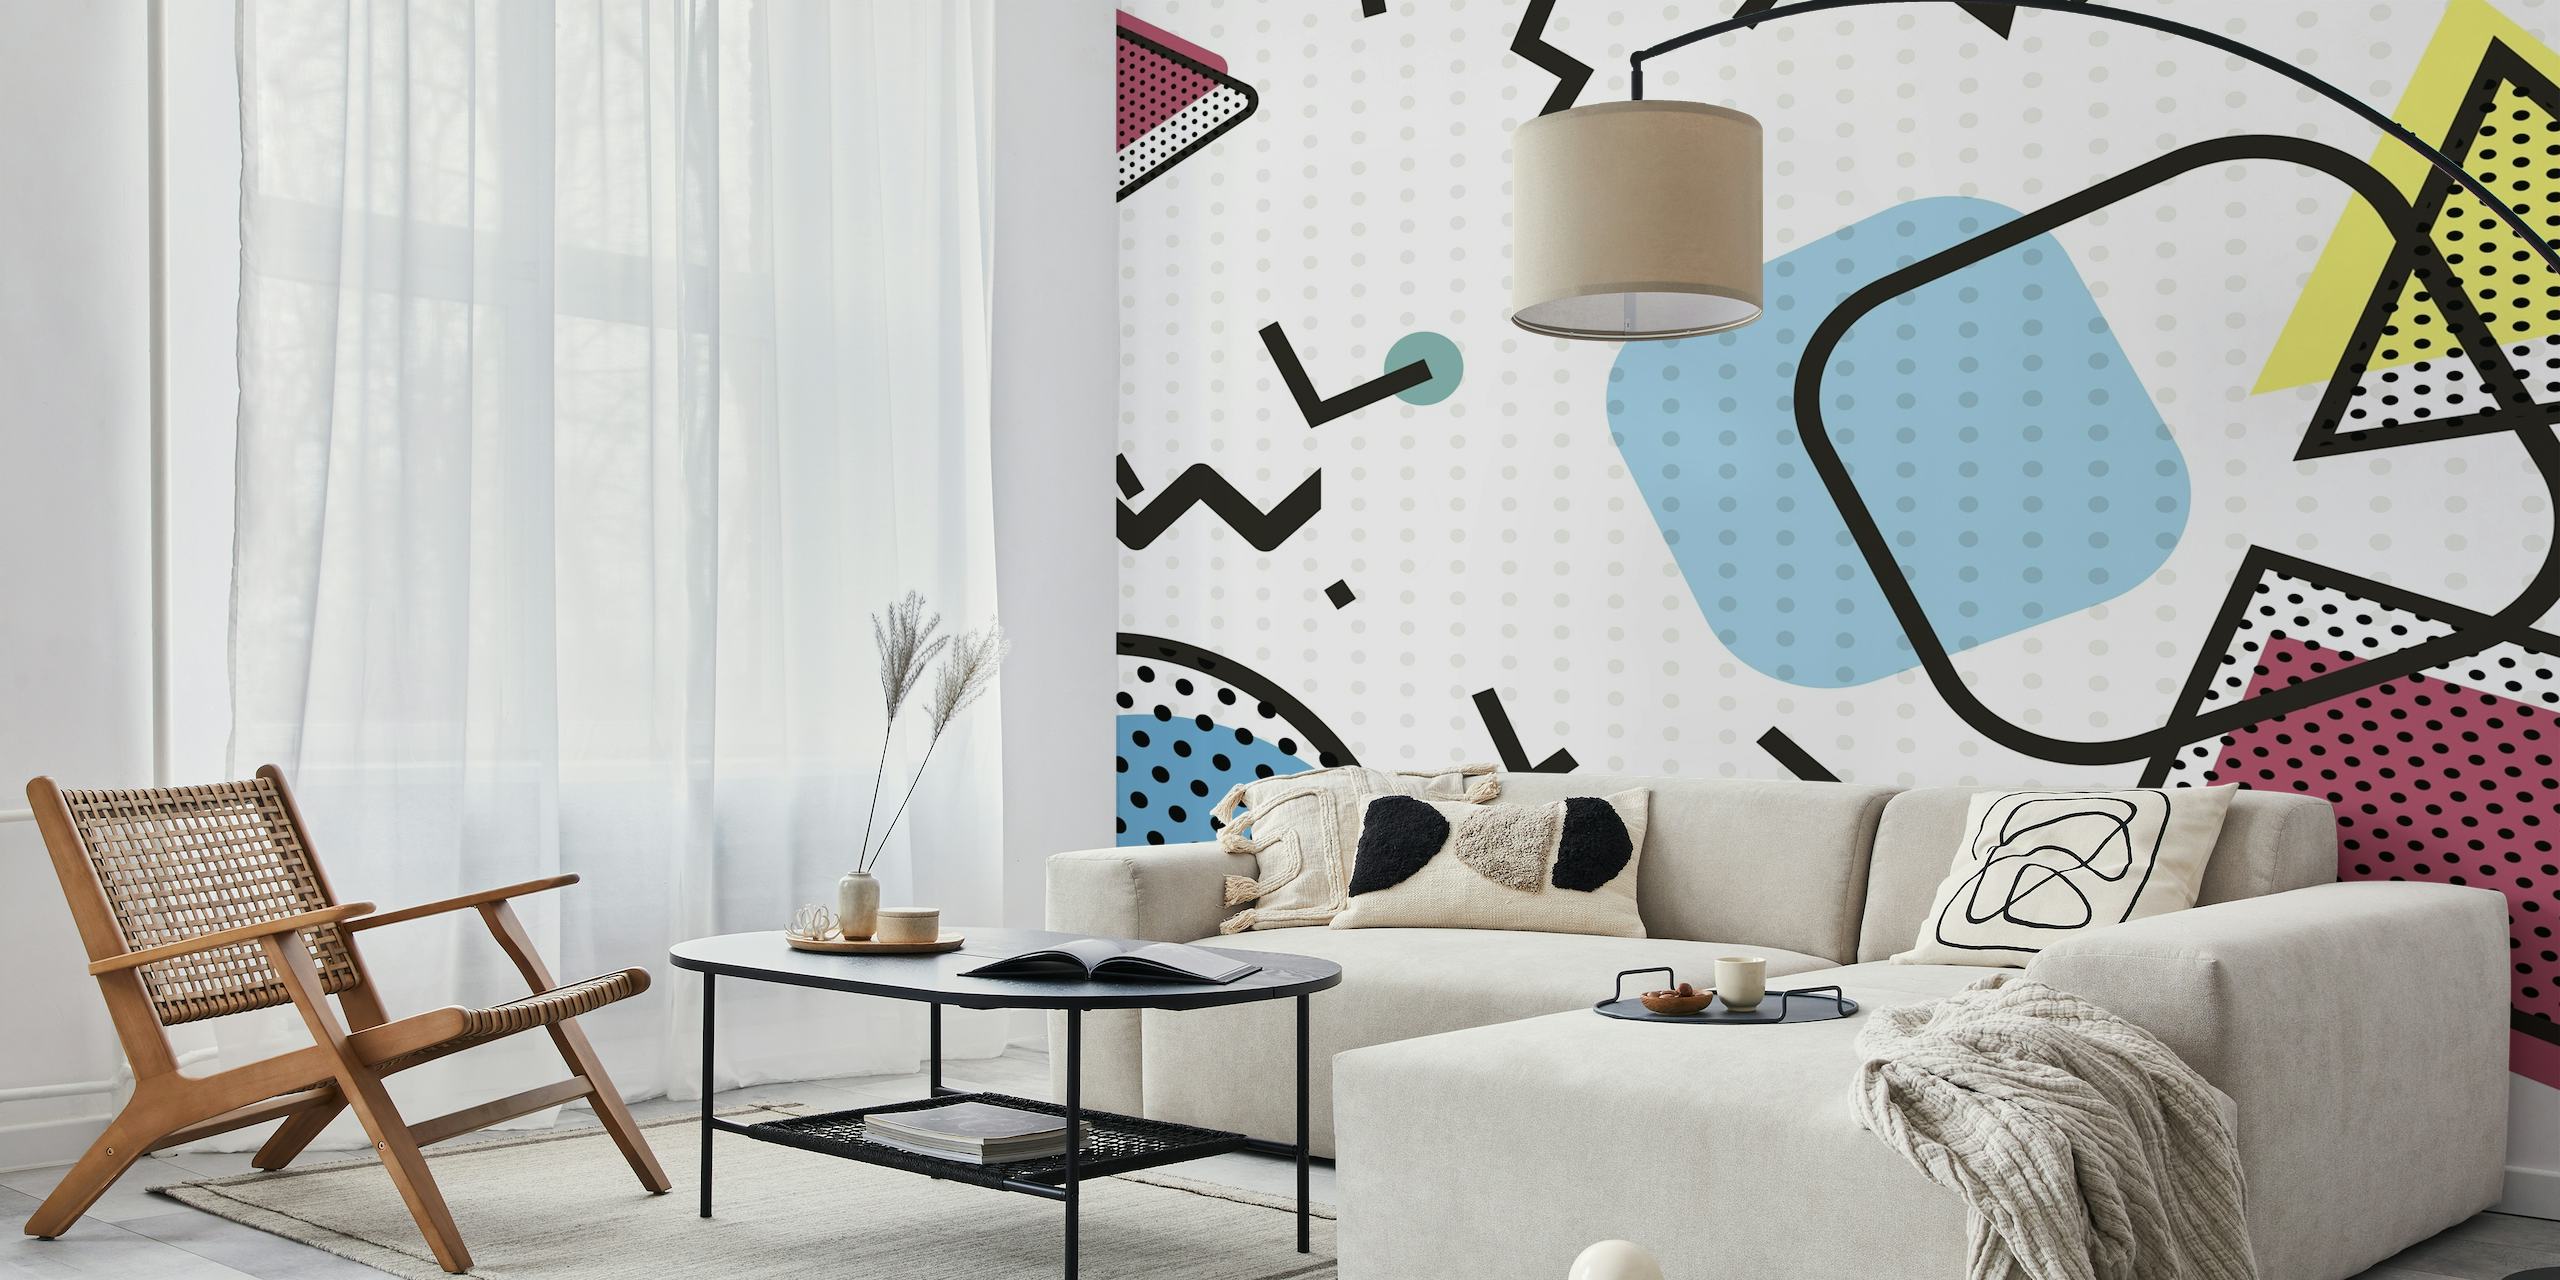 Abstrakteja geometrisia muotoja pop-tyylisessä seinämaalauksessa, jossa on rohkeita värejä ja vintage-kuvioita